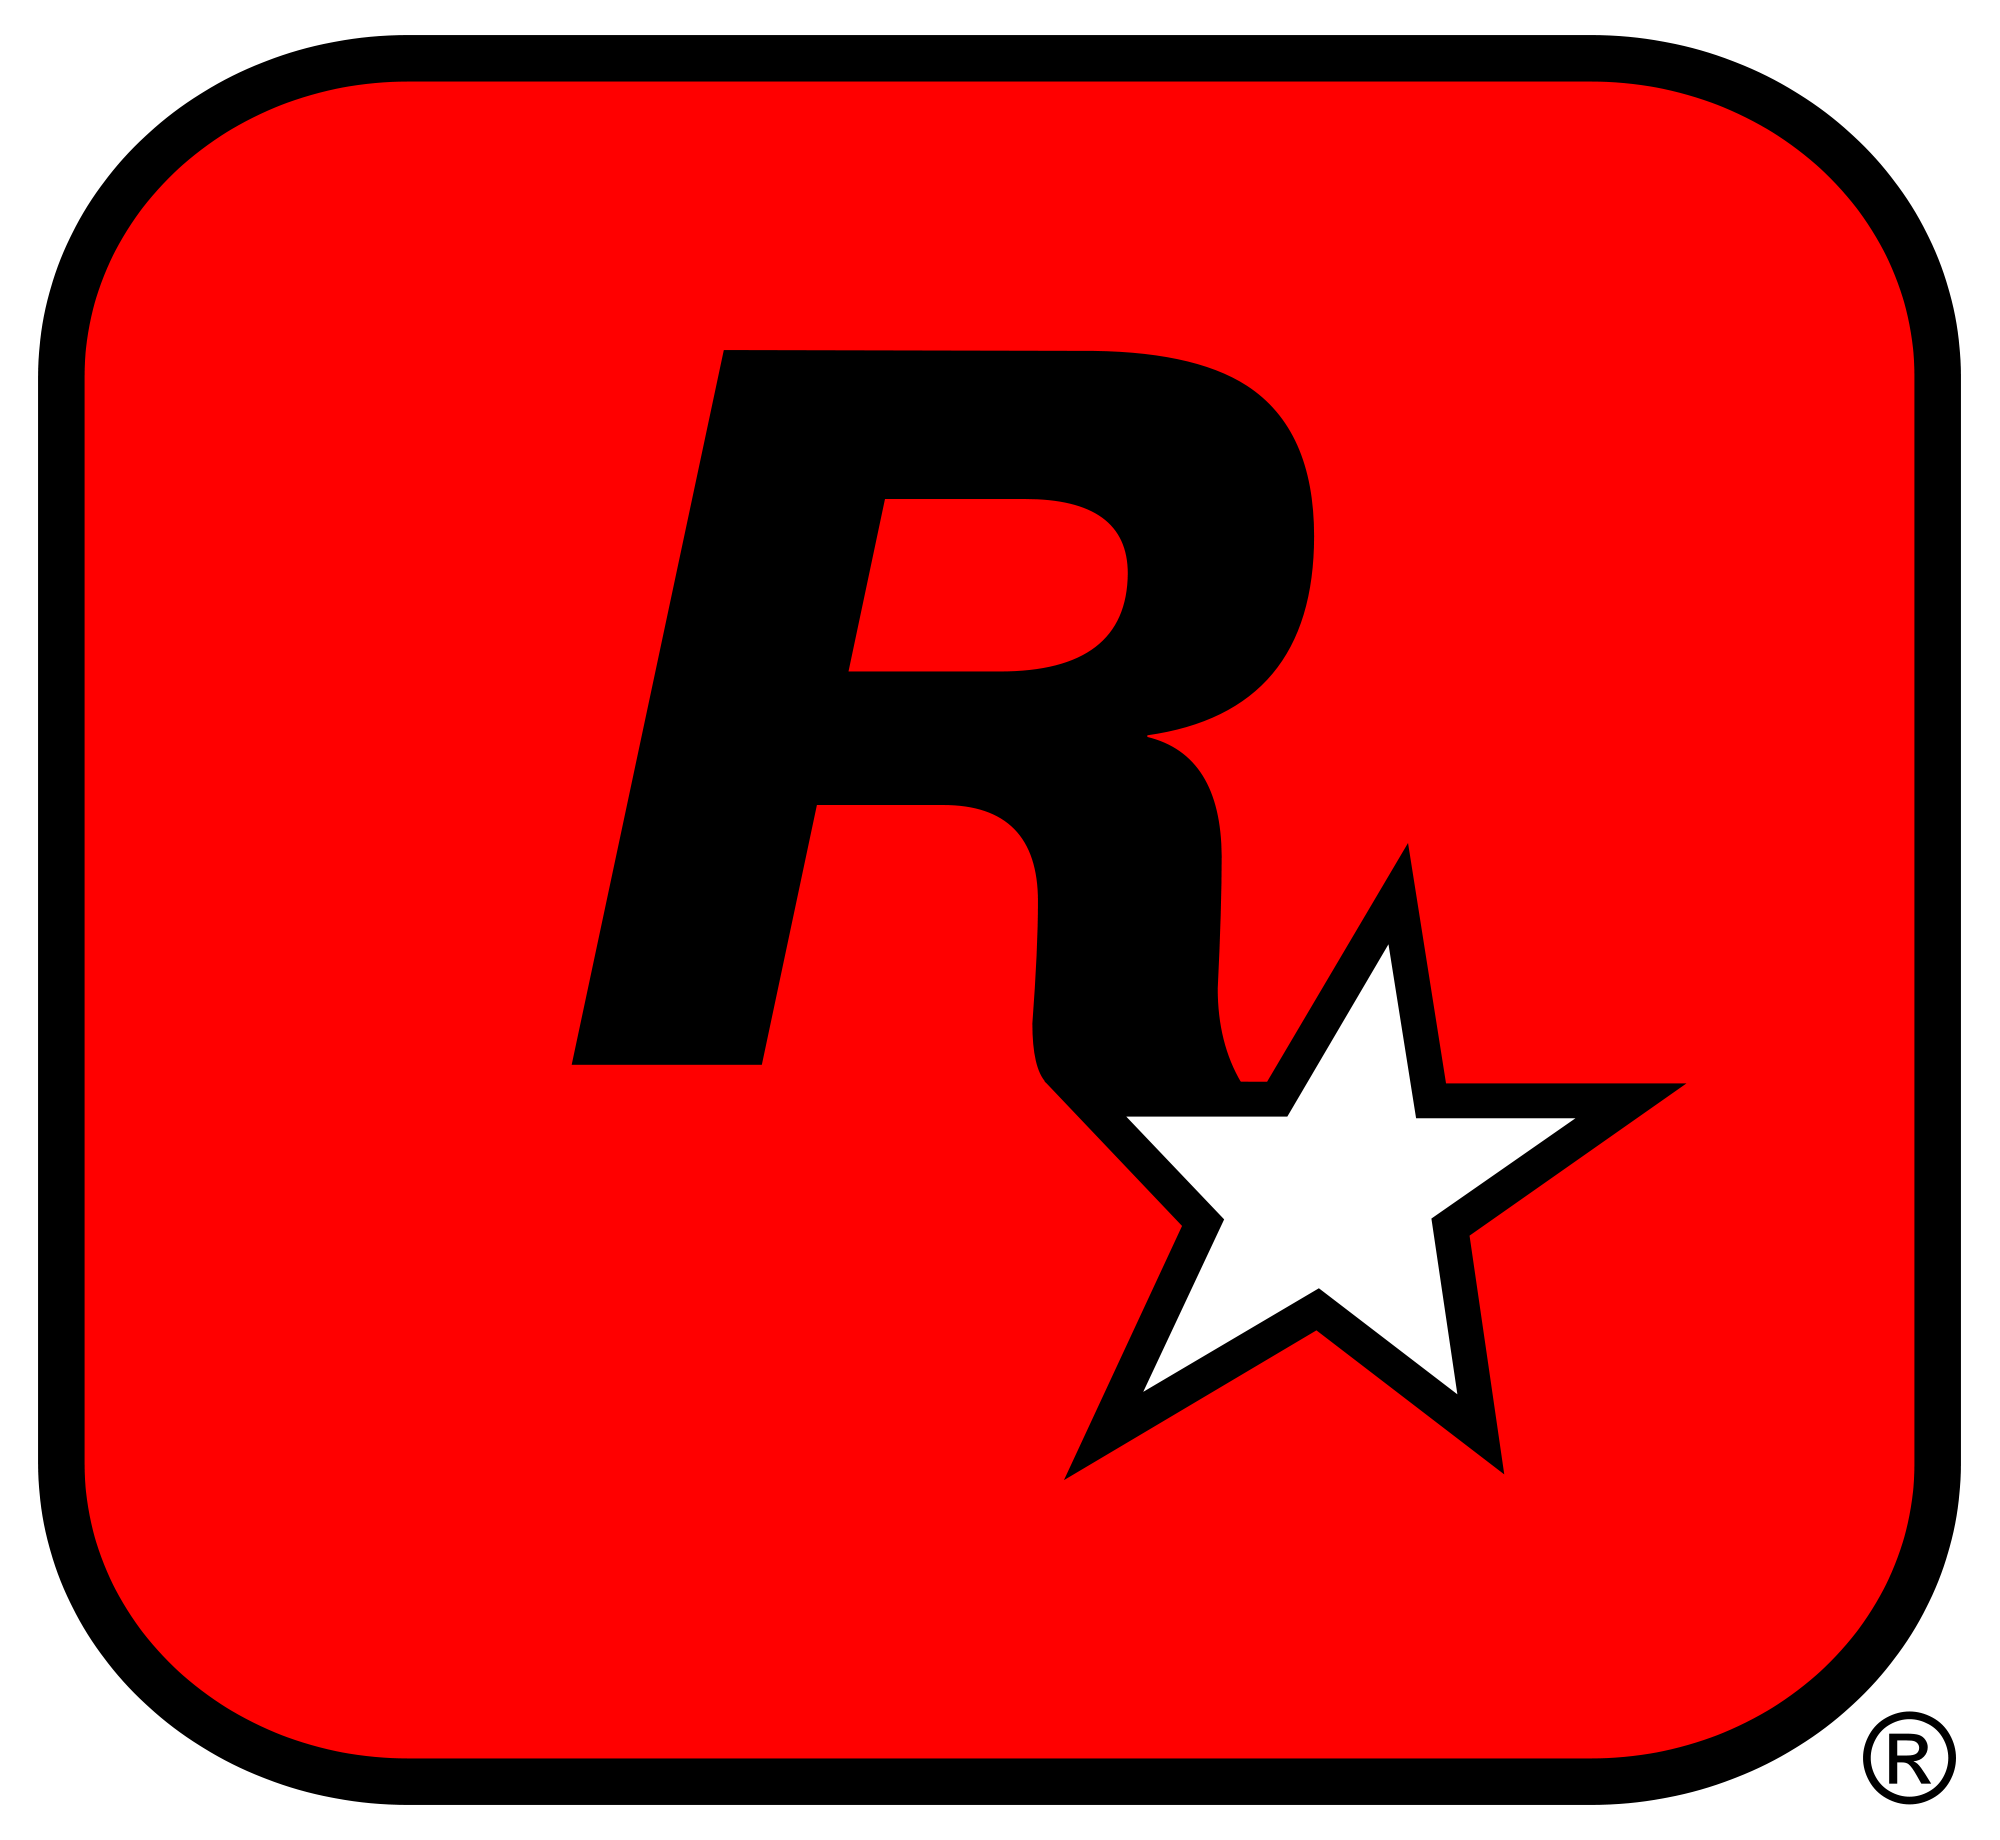 Rockstar Games.png